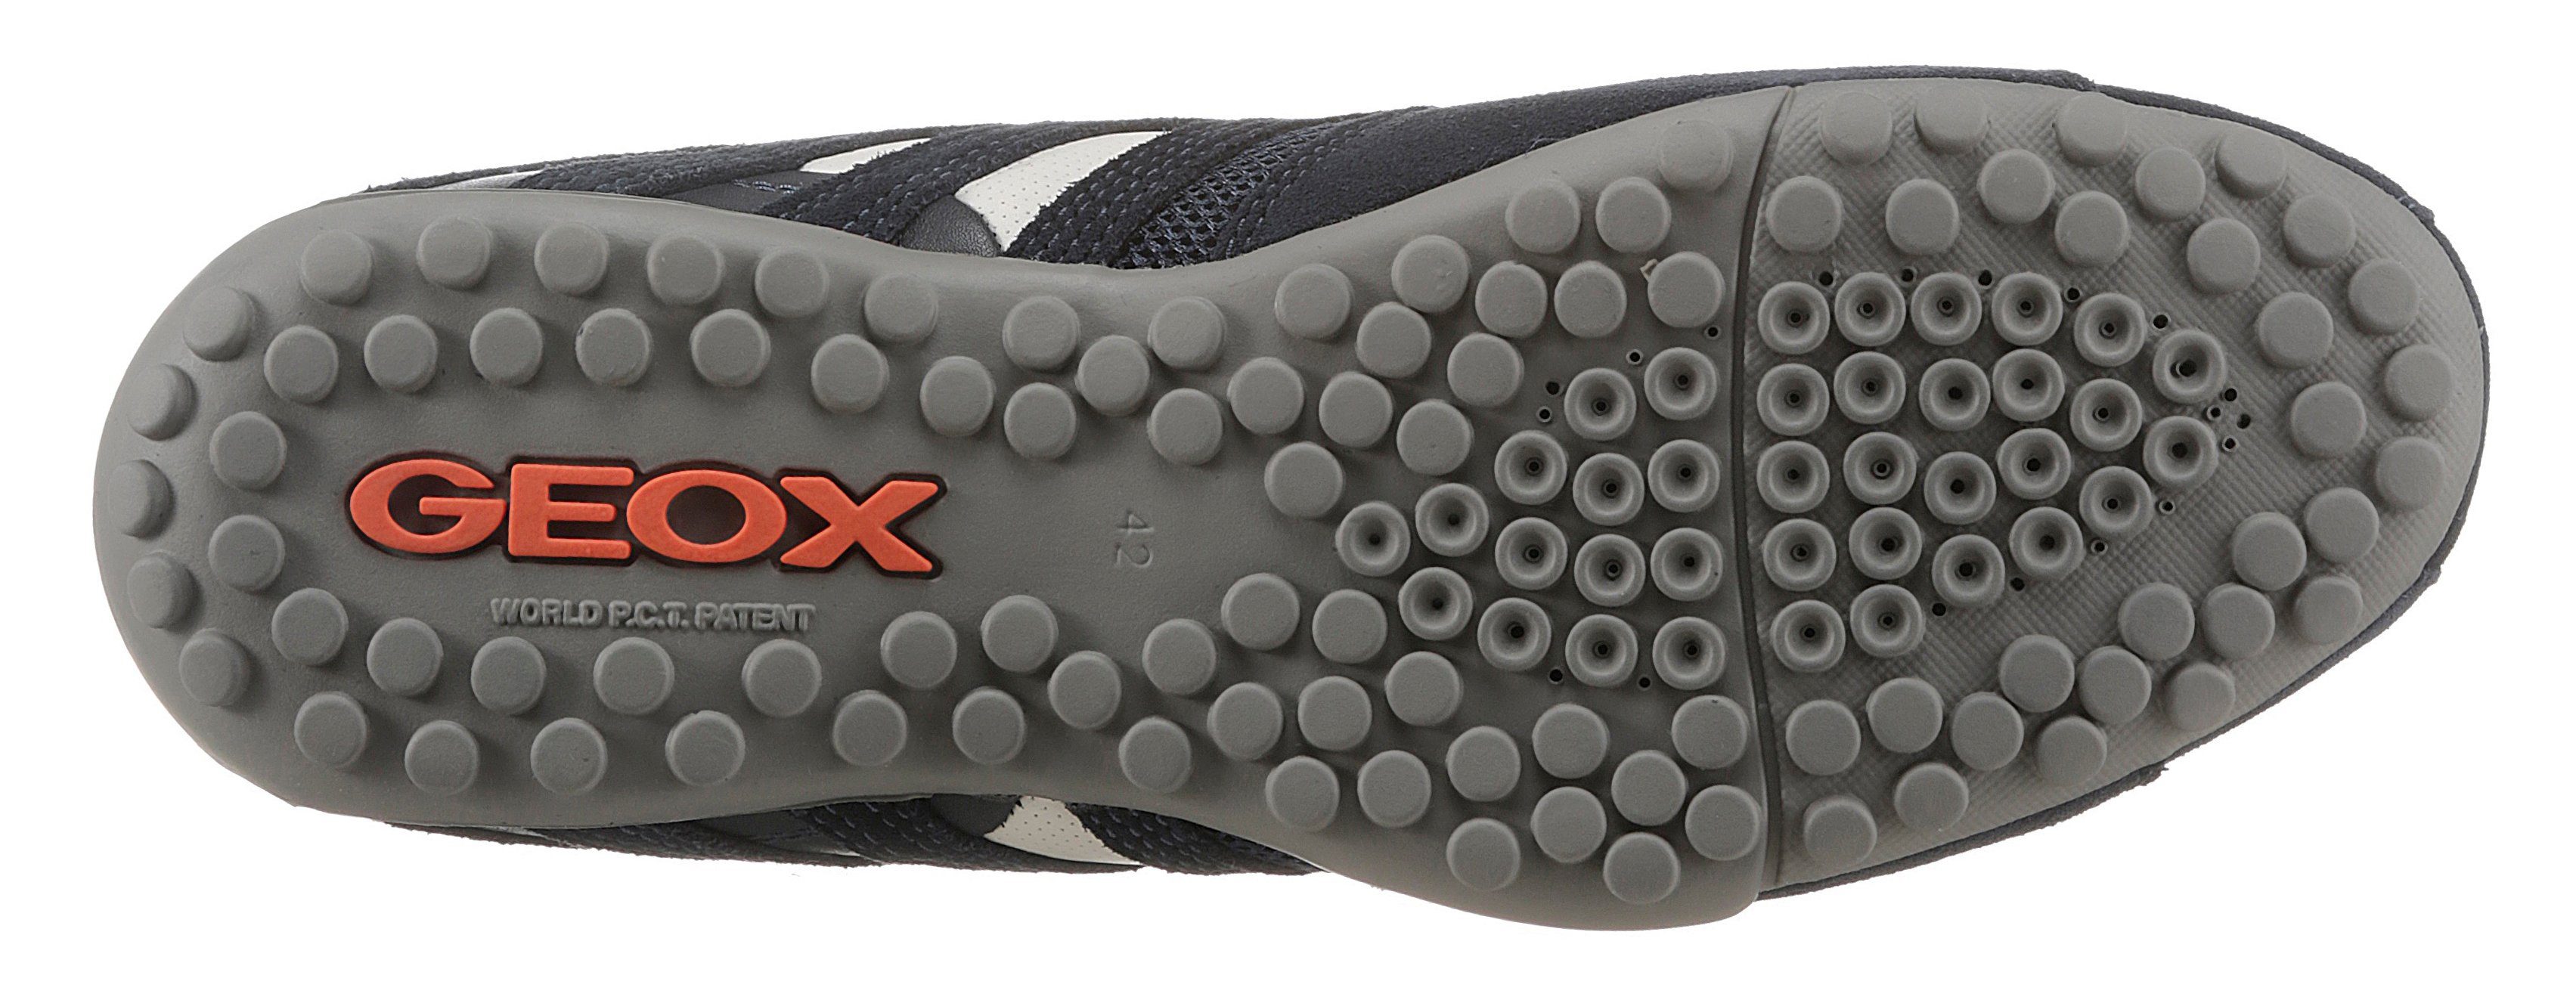 Geox UOMO SNAKE Slip-On Sneaker modischen mit Spezial Geox dunkel-blau Ziernähten mit Membrane und